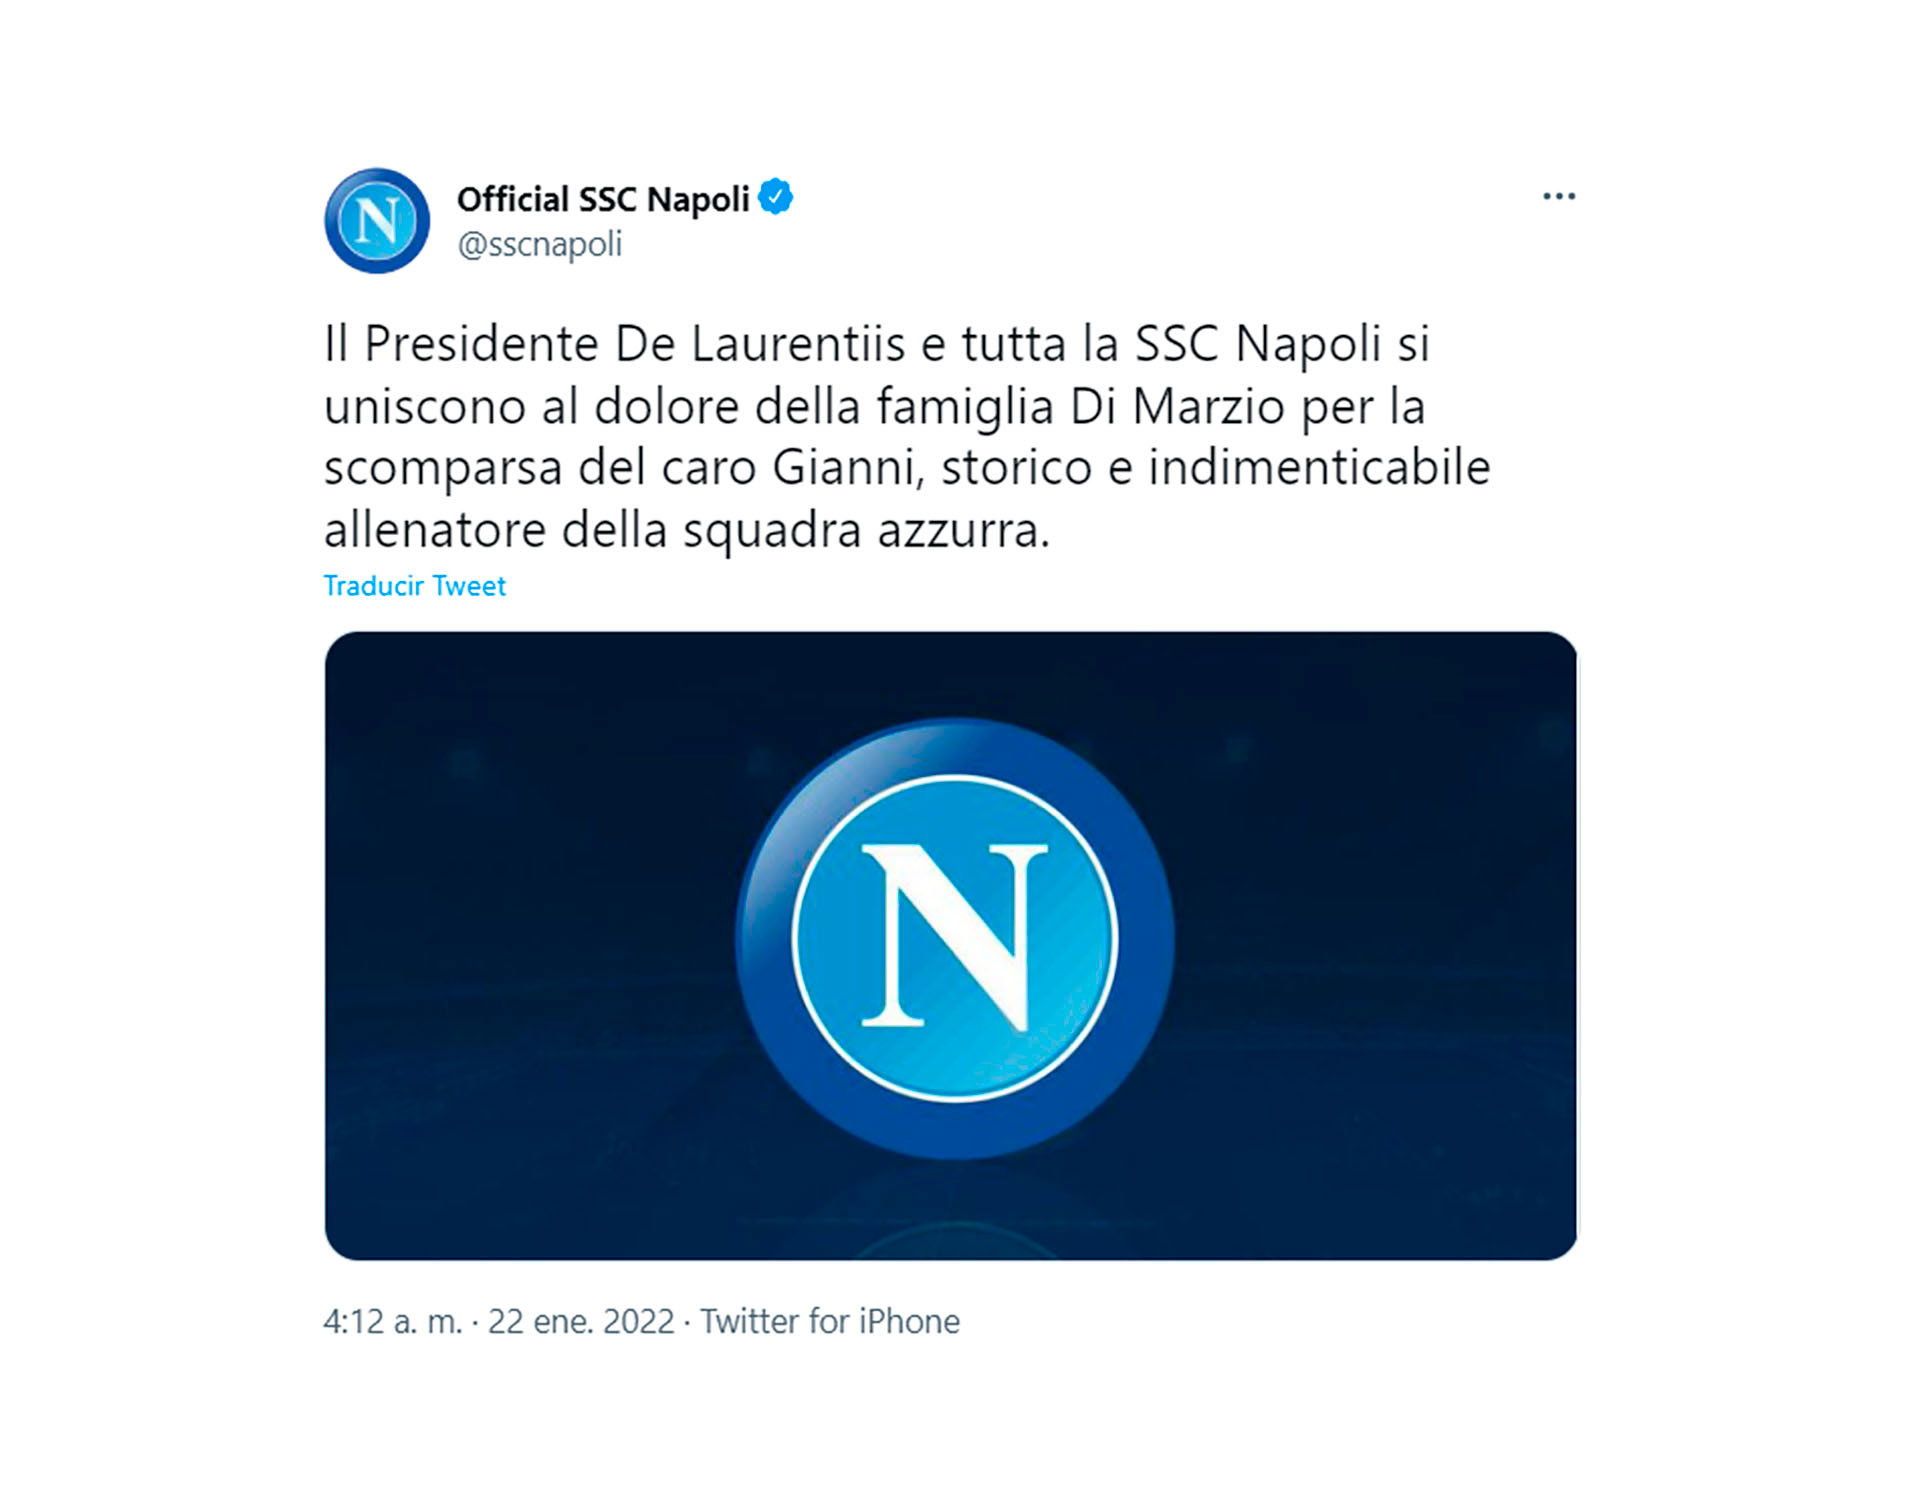 El tuit del Napoli por la muerte de Di Marzio